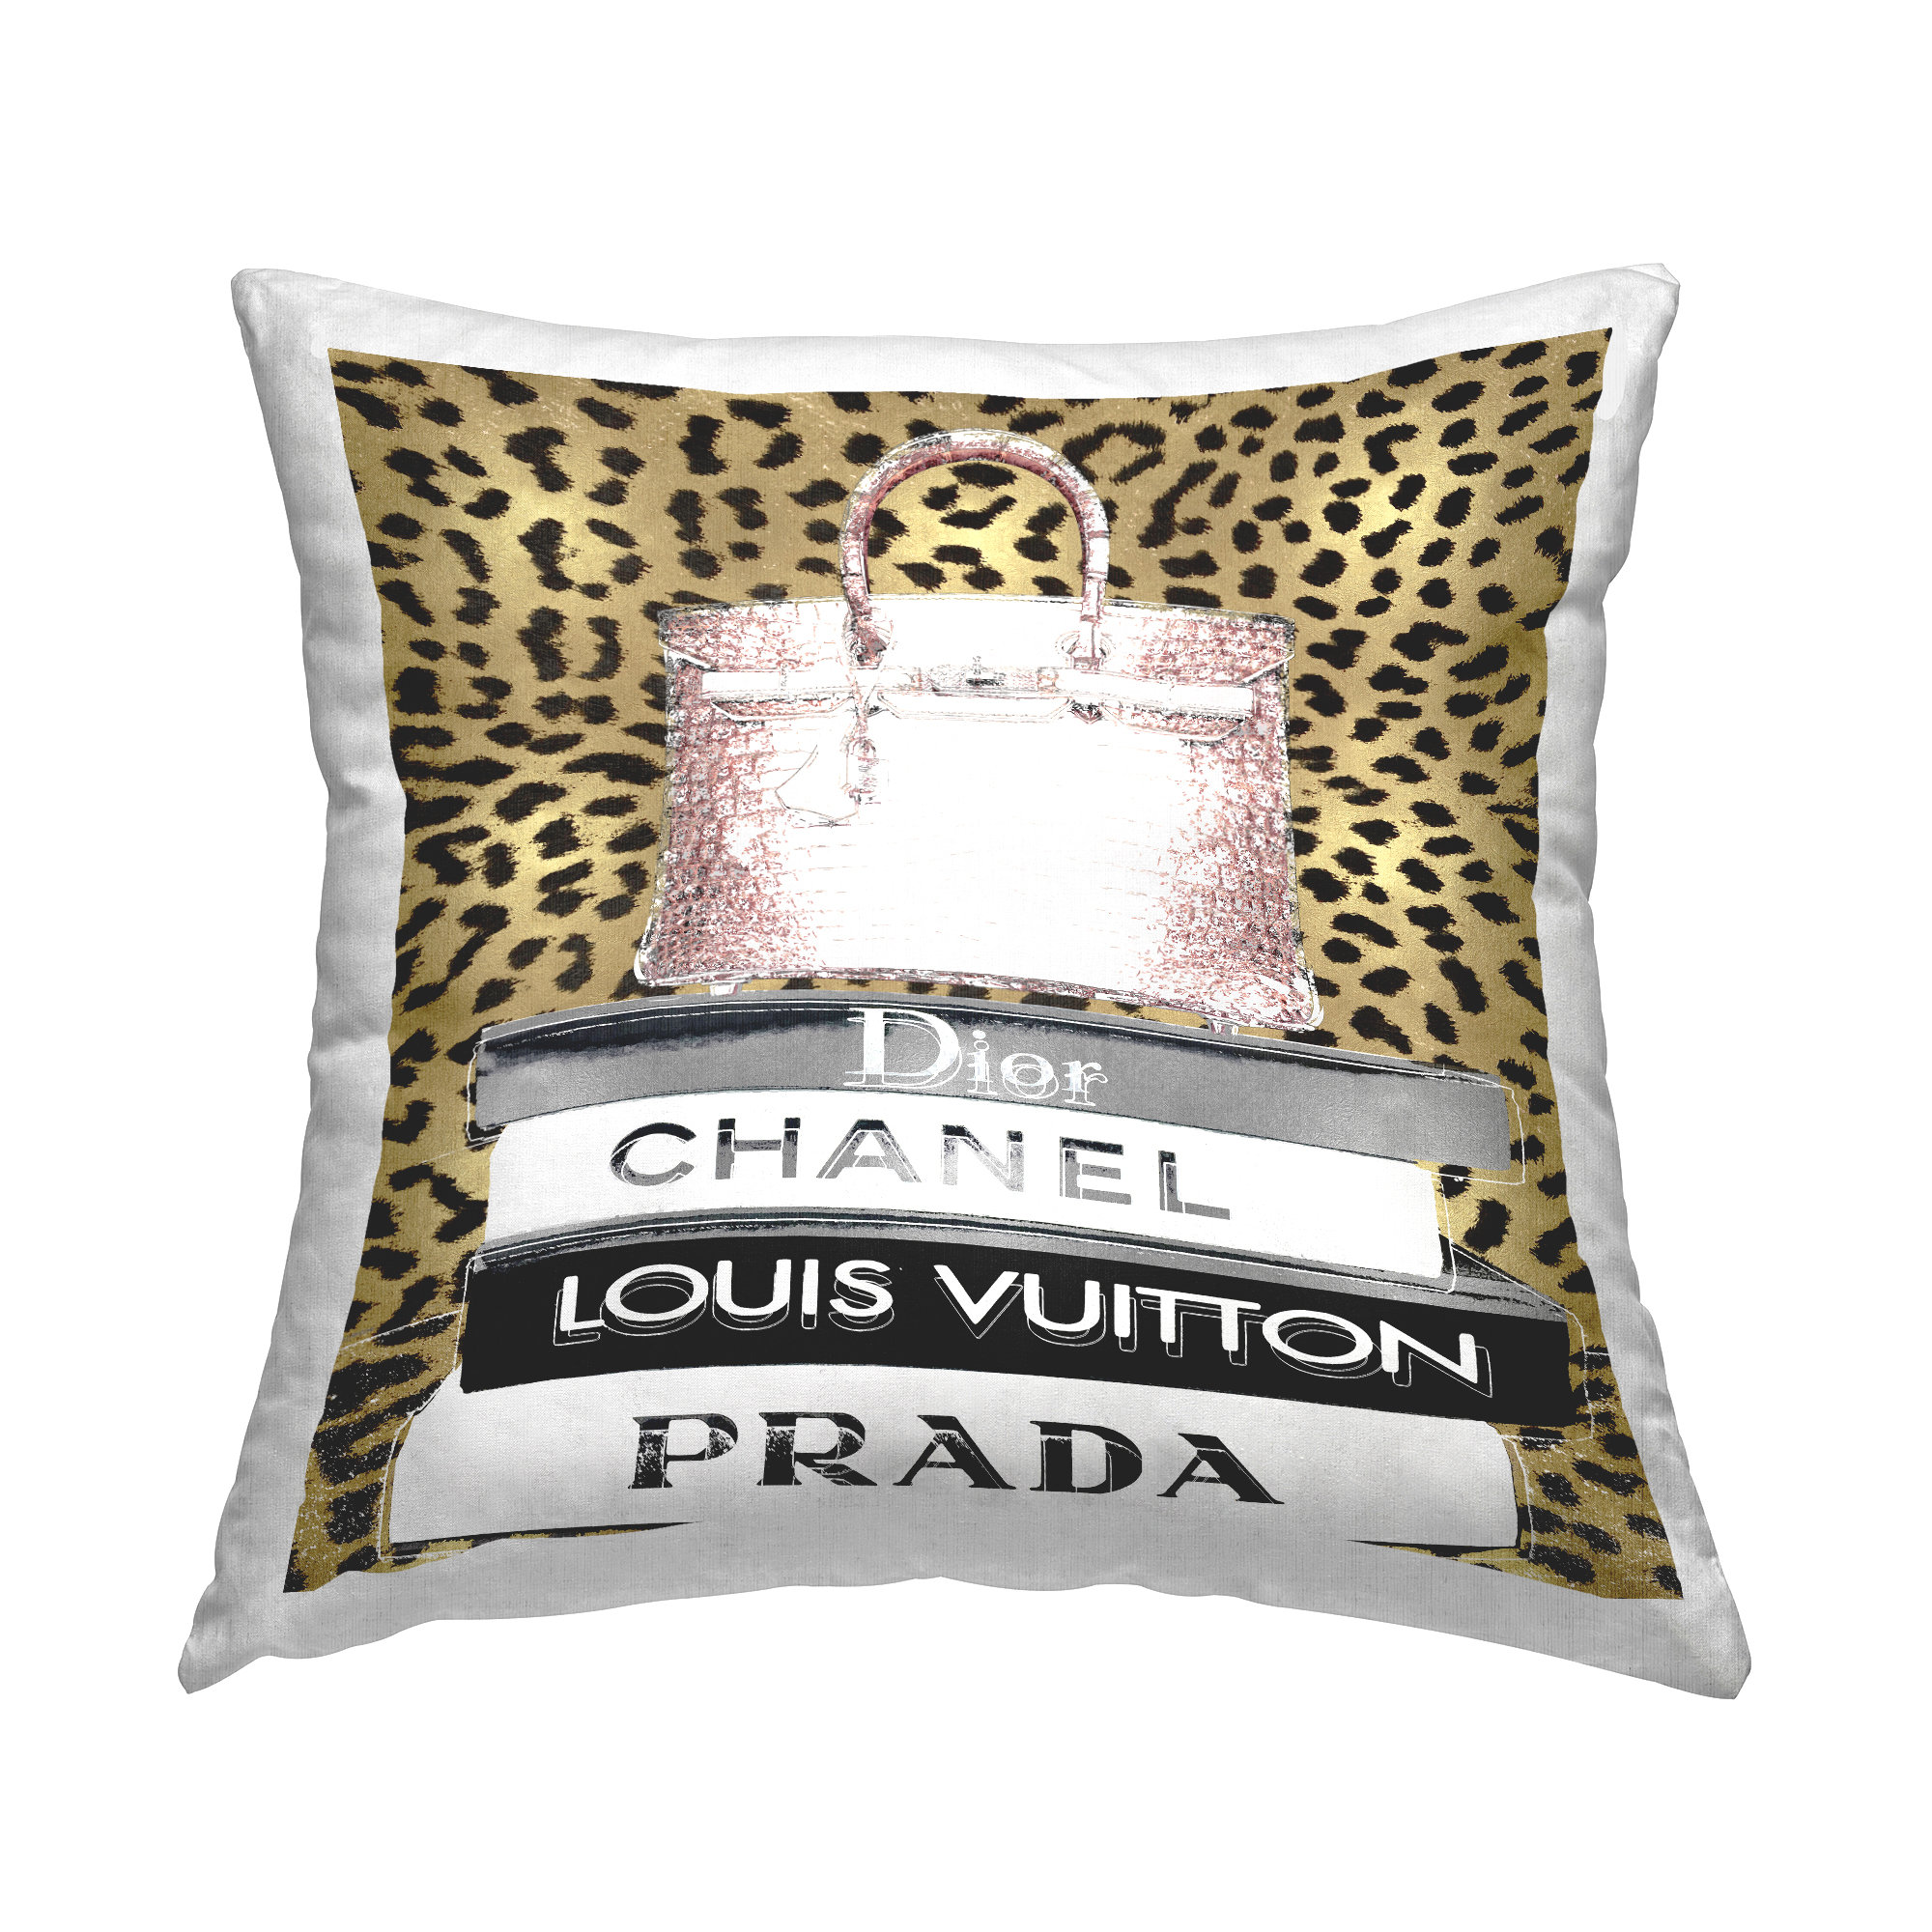 Vuitton Pillow Cover 